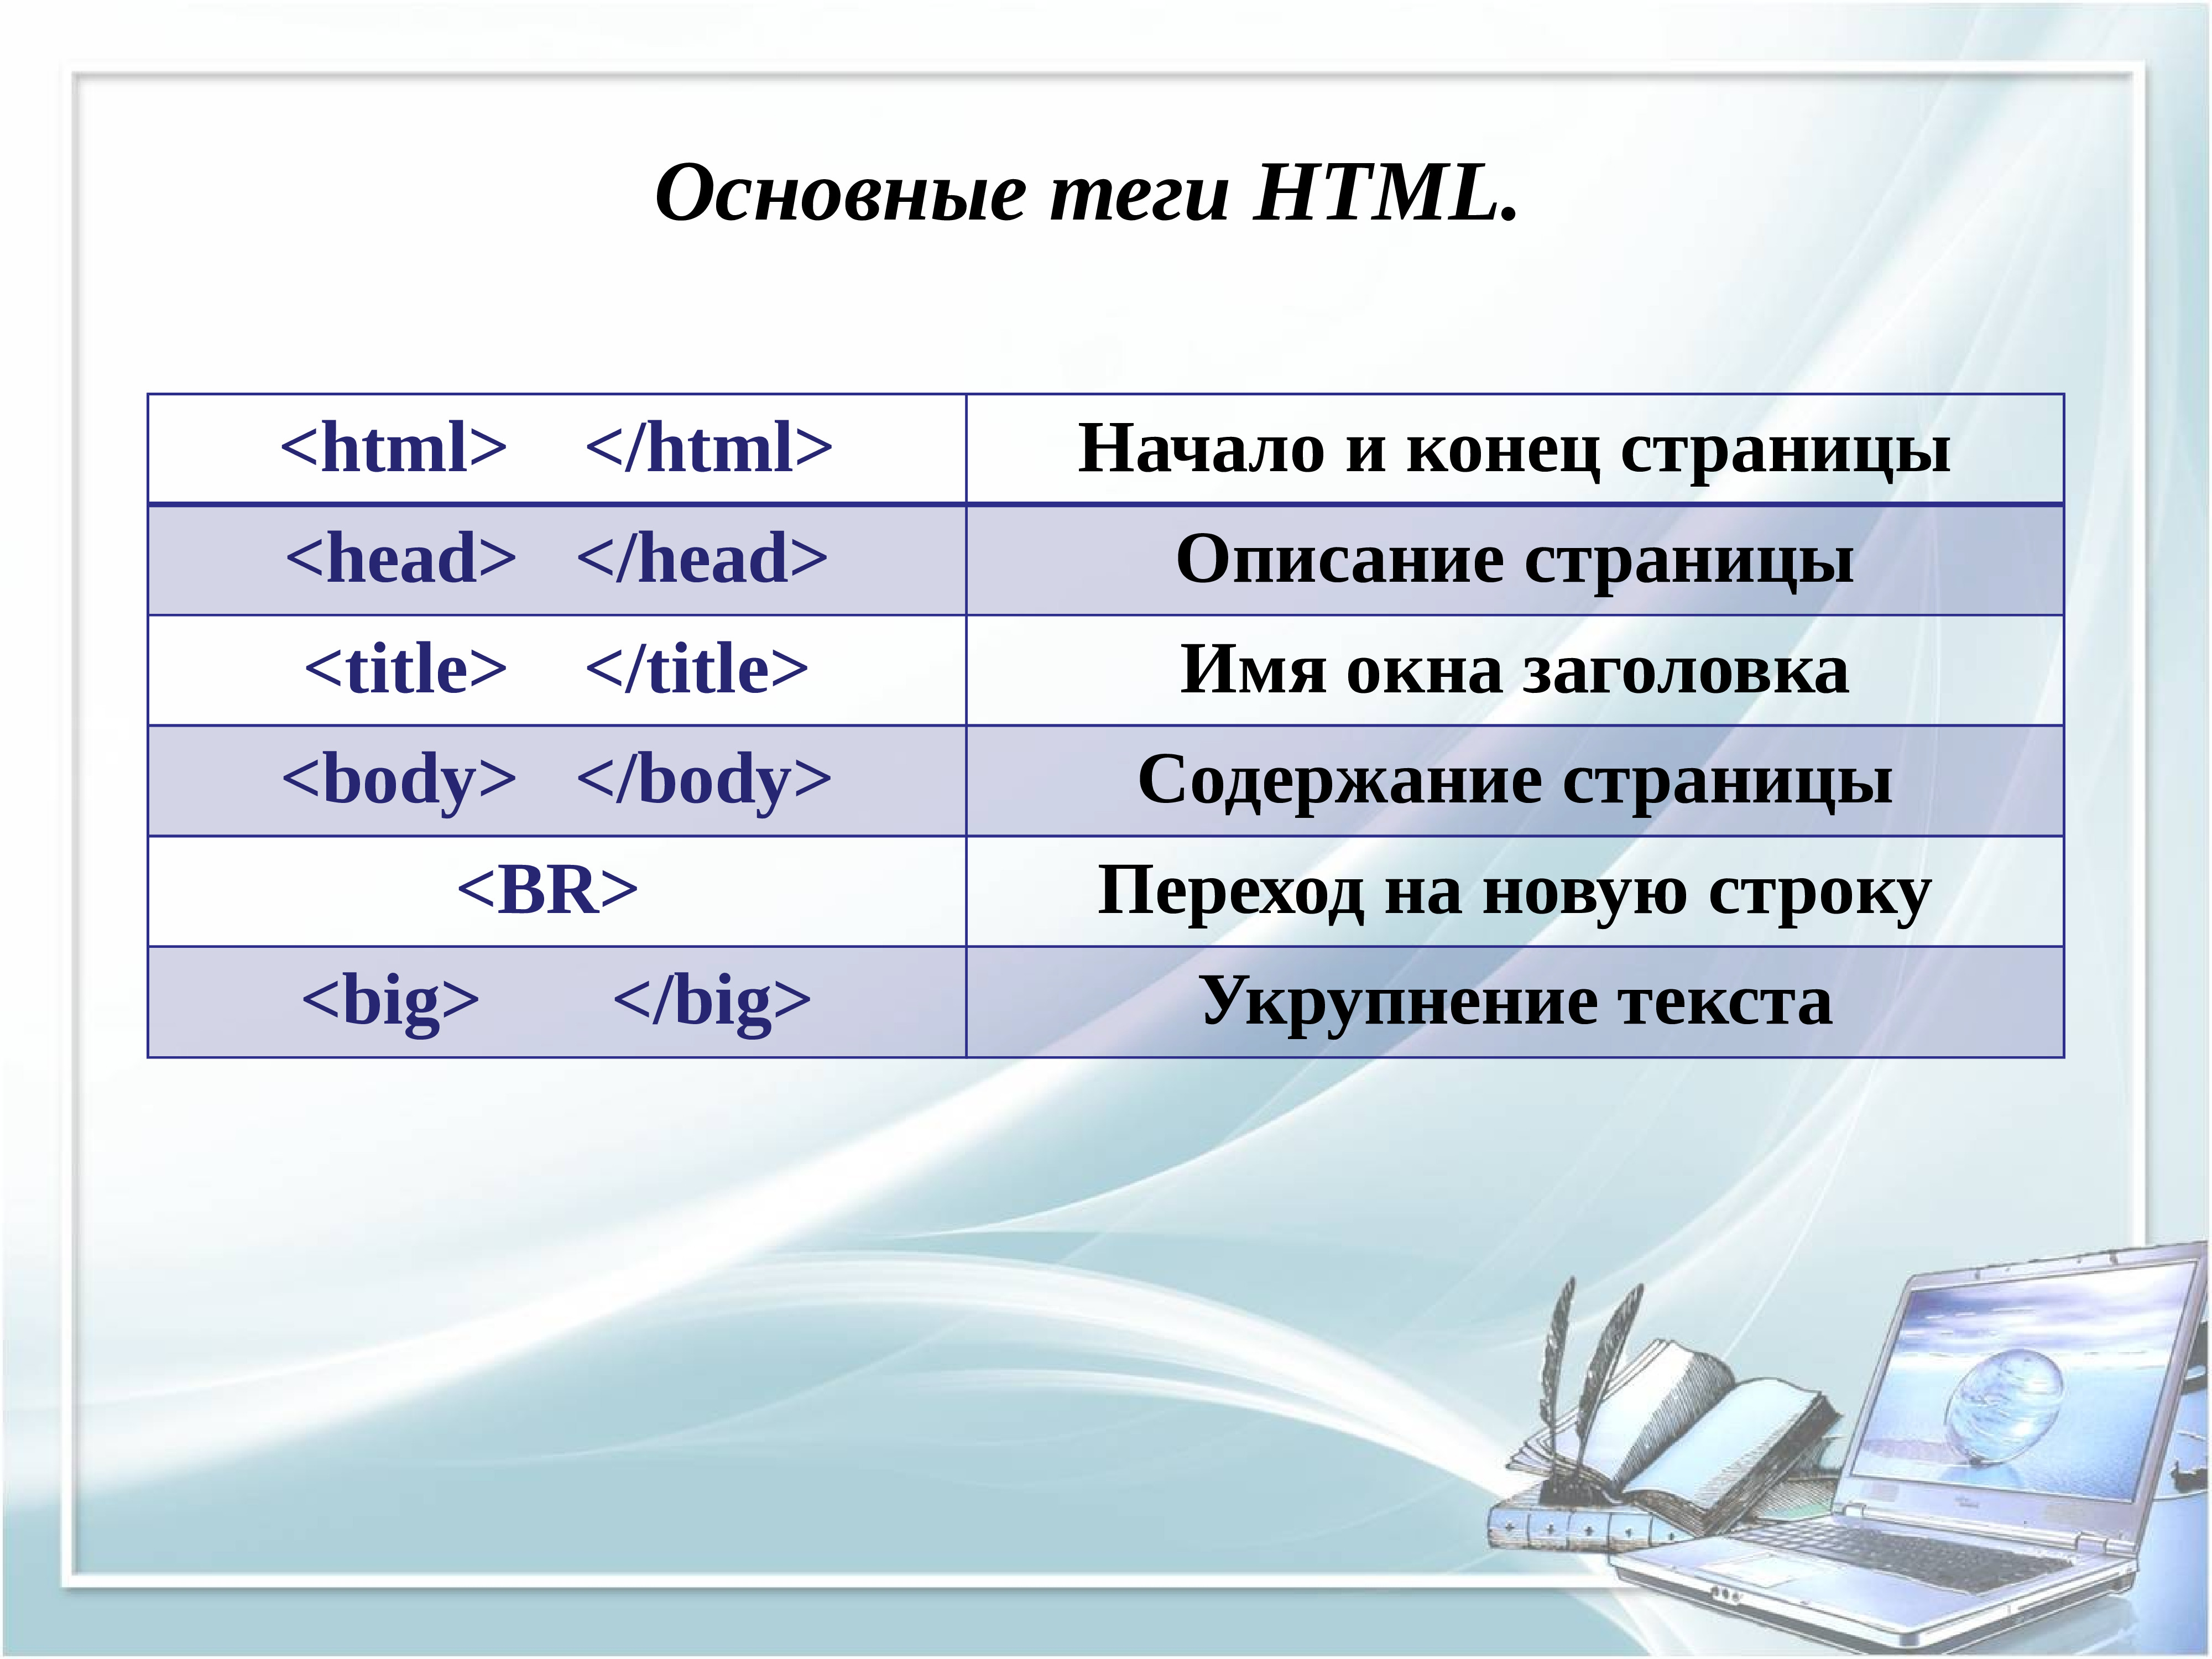 Away html. Основные Теги языка html. Базовые Теги html. Html Теги список. Таблица основных тегов html.